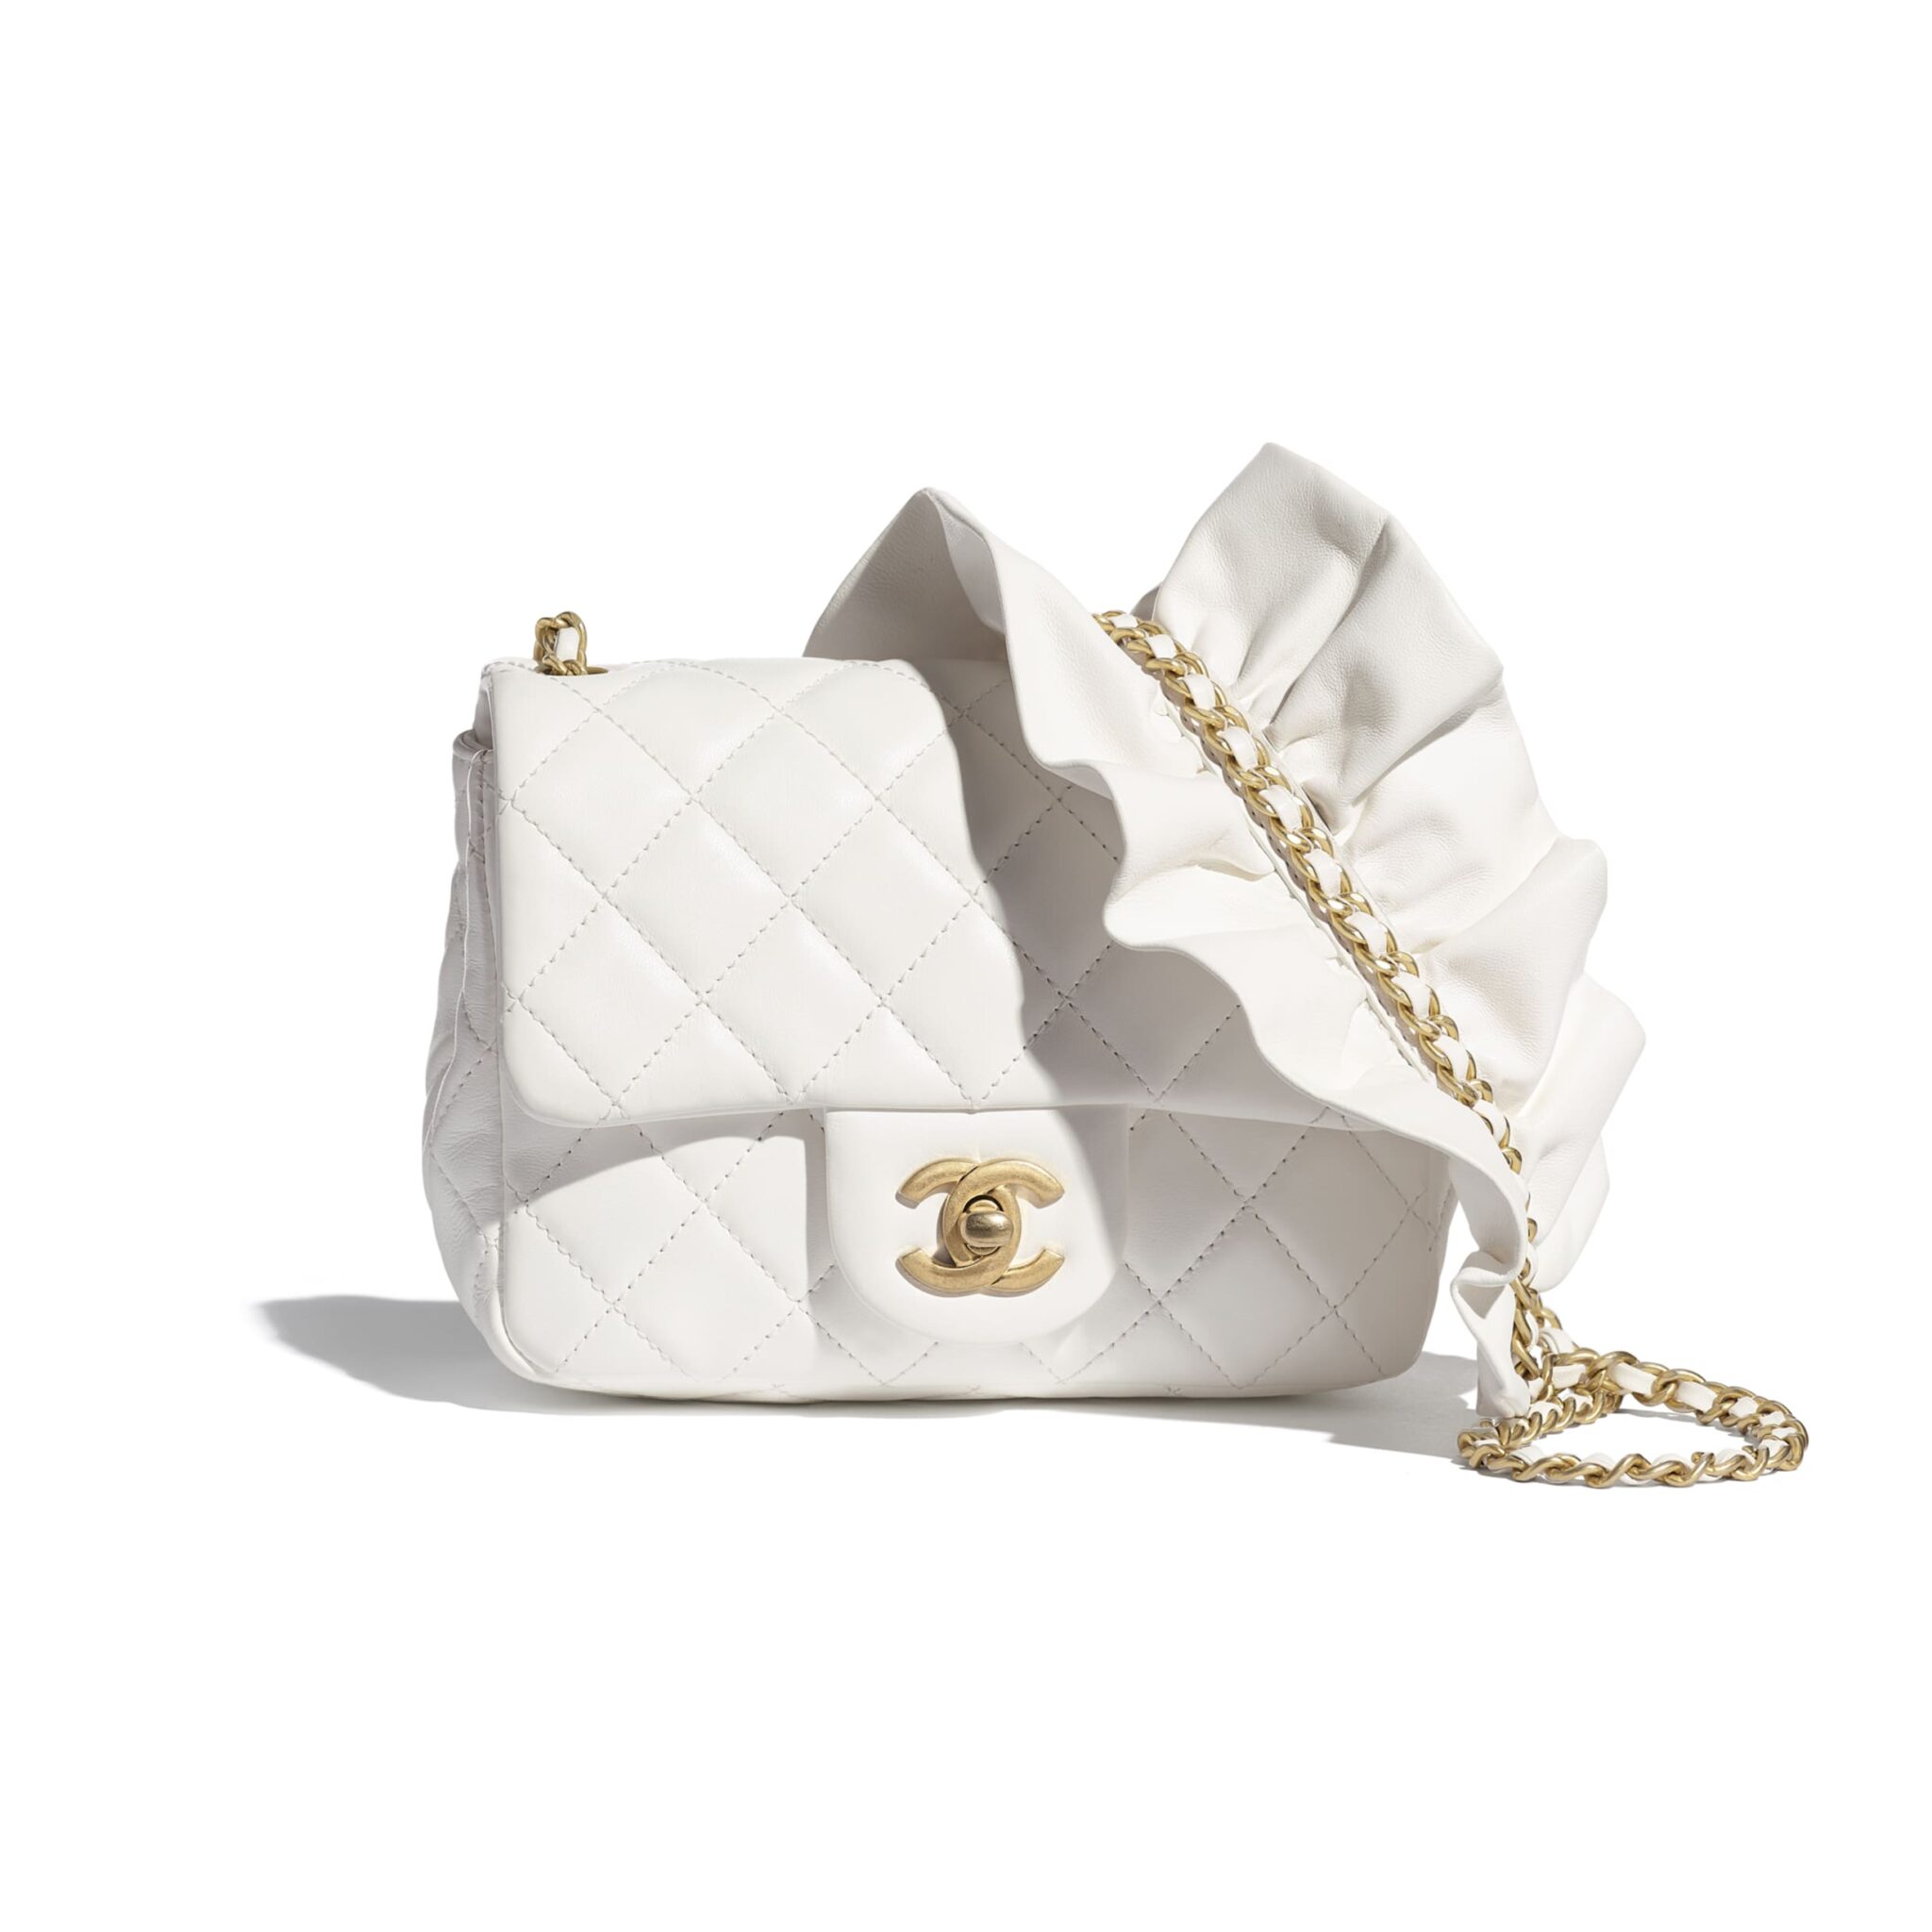 Chanel White Bag Romance Square Mini Flap Bag